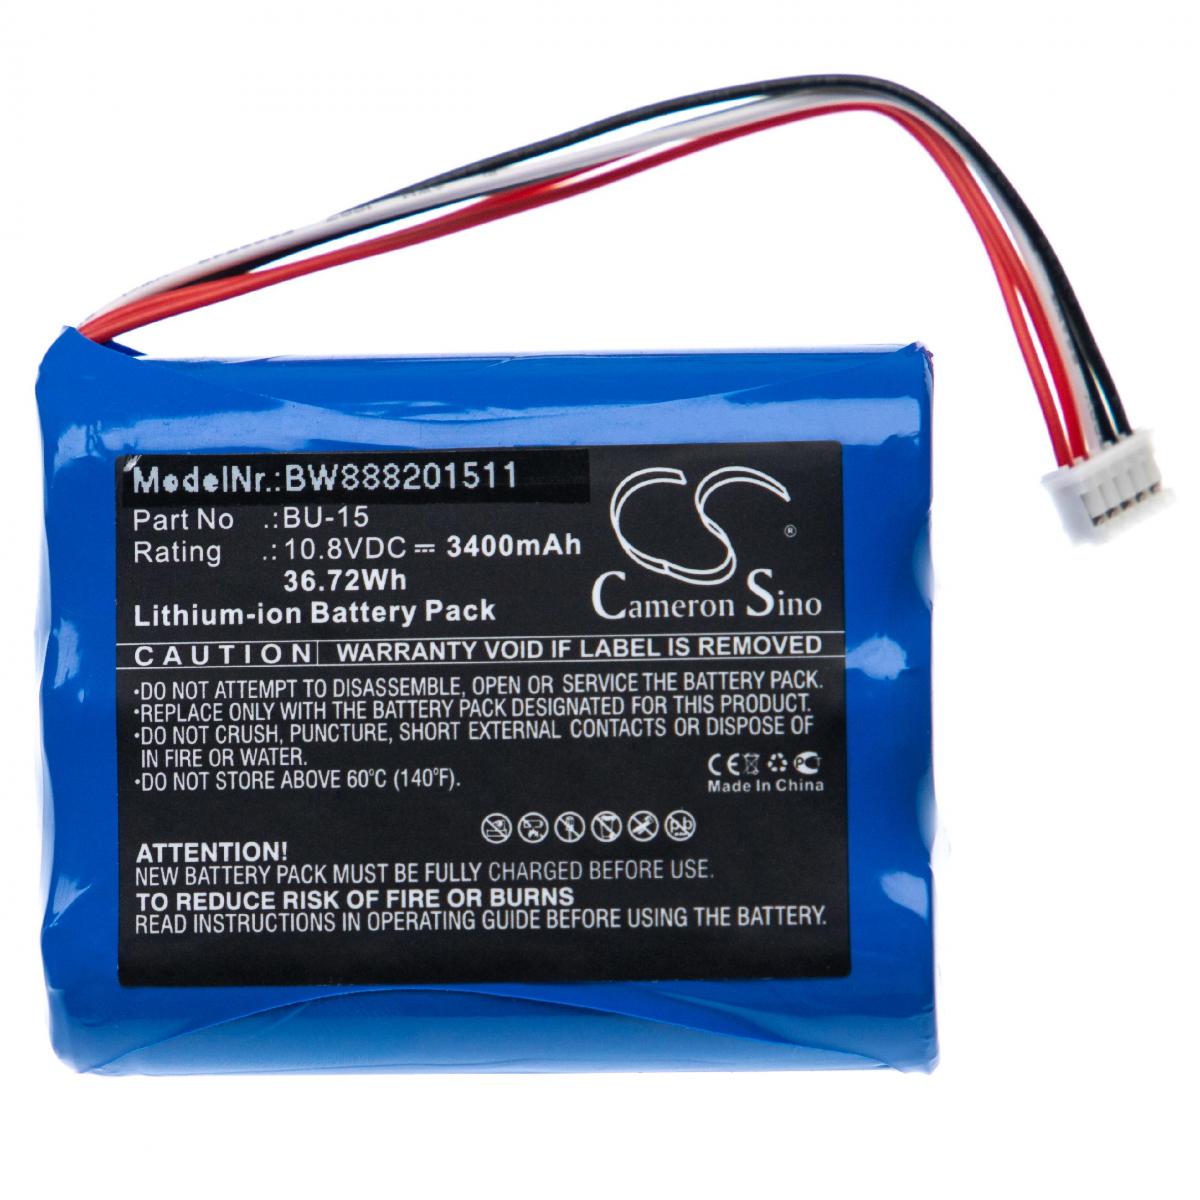 Vhbw - vhbw batterie remplace Sumitomo BU-15 pour soudeuse (3400mAh, 10,8V, Li-Ion) - Clouterie